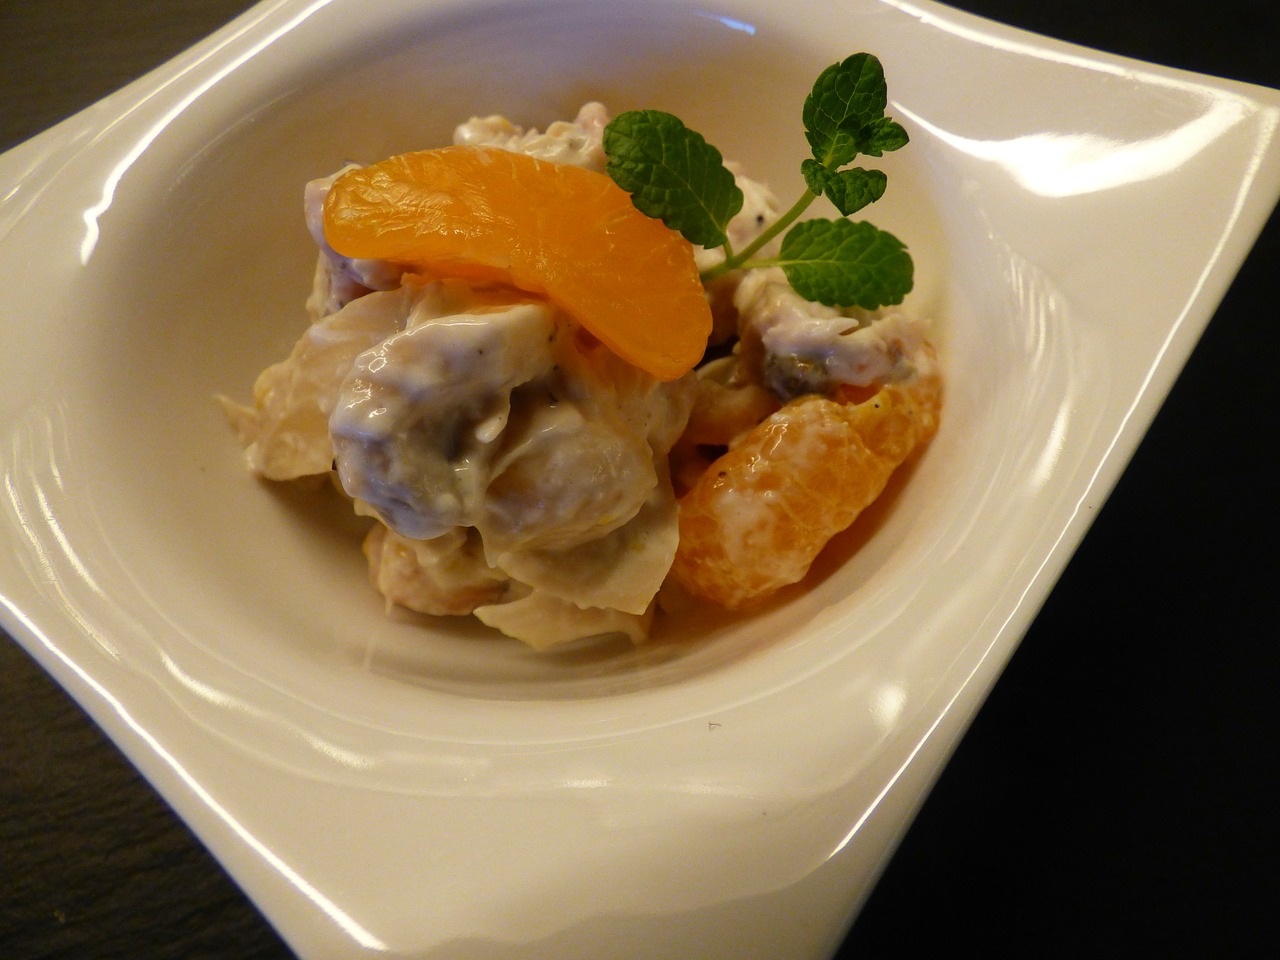 Cashew Chicken Salad With Mandarin Oranges